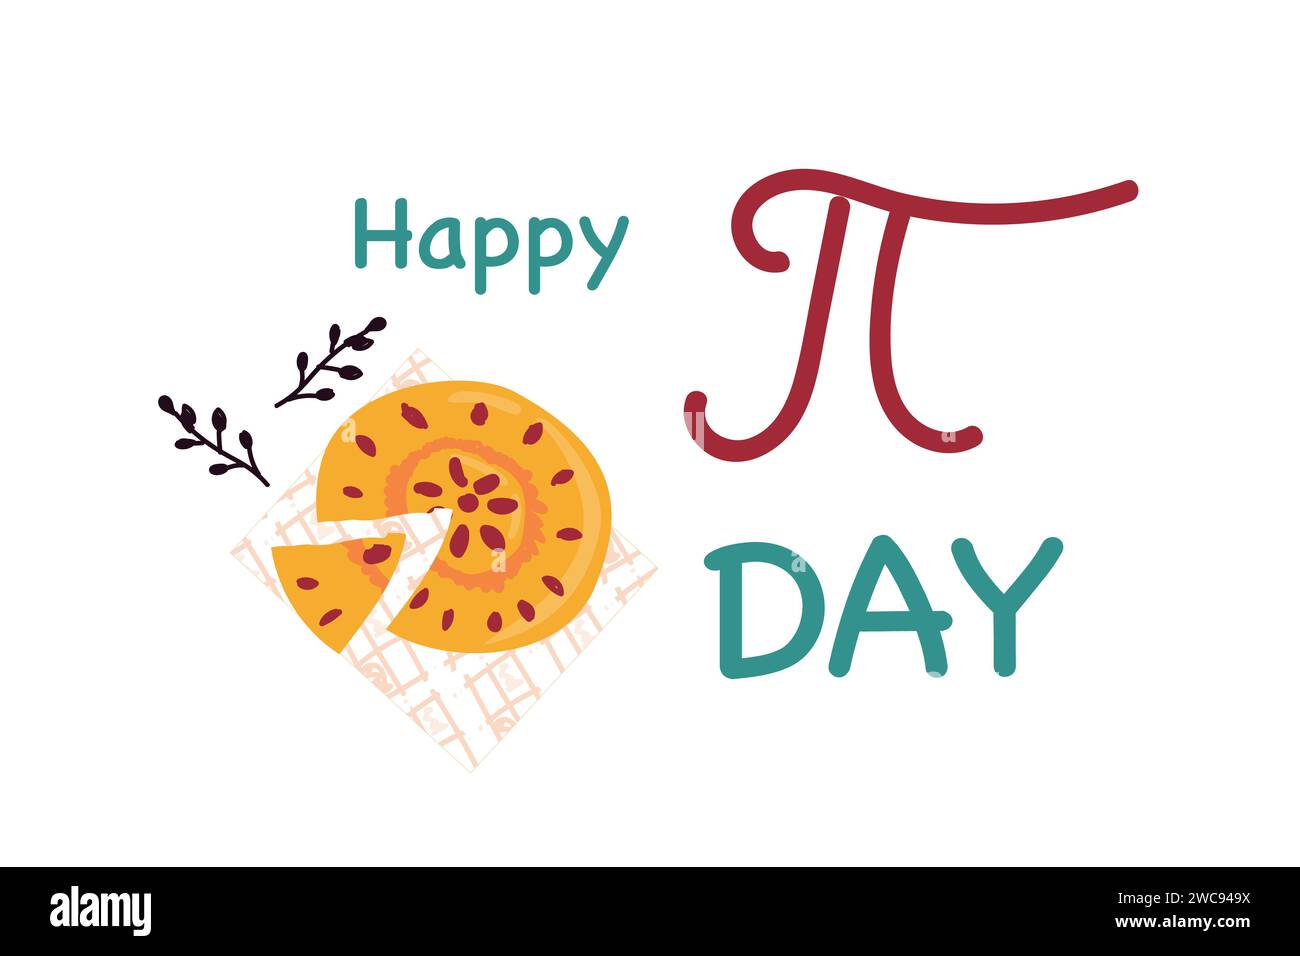 Biglietto per festeggiare il Pi Day con torta e simbolo pi. Illustrazione vettoriale isolata. Può essere utilizzato per banner o biglietti di auguri nazionali pi Day. Illustrazione Vettoriale